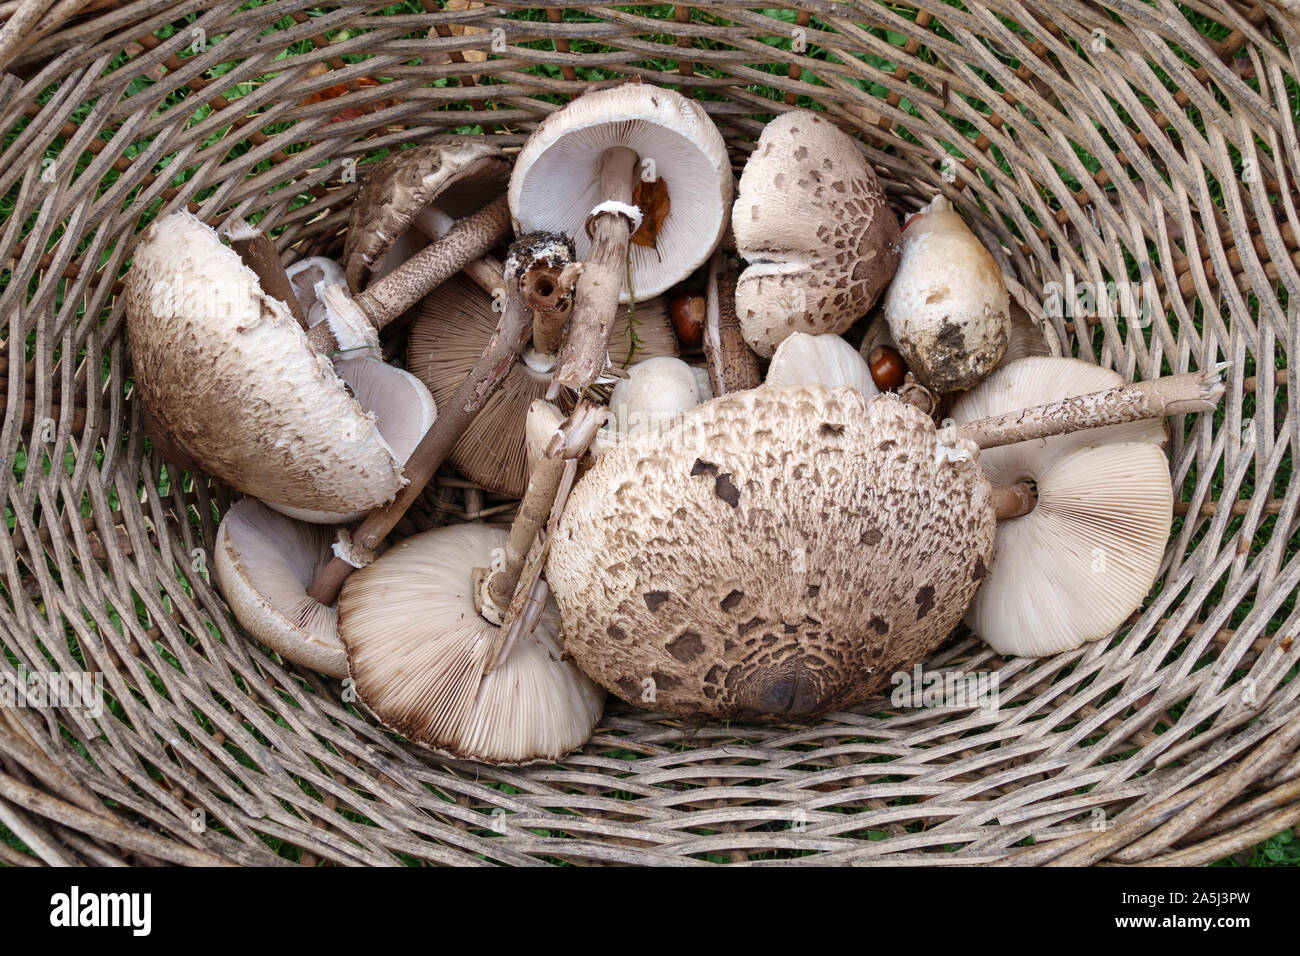 Herefordshire, UK. Un panier de champignons fraîchement cueillis parasol (Macrolepiota procera), assez fréquents dans la Grande-Bretagne à la fin de l'été et l'automne Banque D'Images